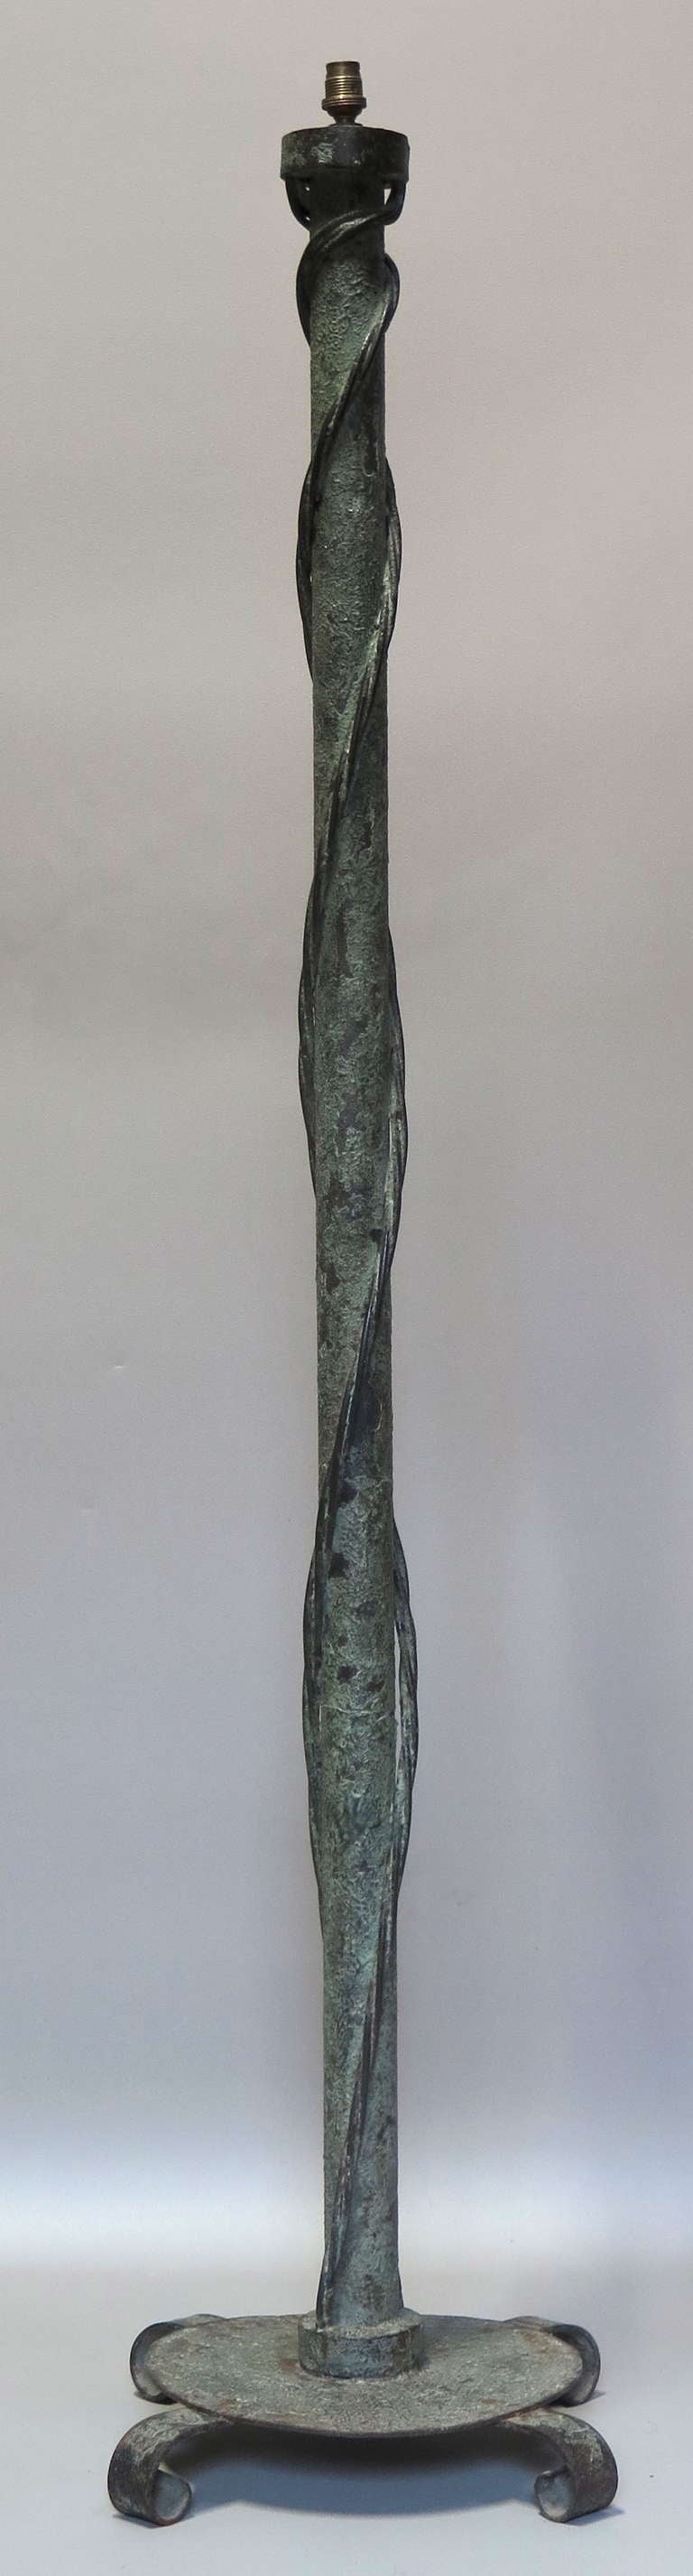 Élégant lampadaire en fer avec une finition bronze texturé vert-de-gris.